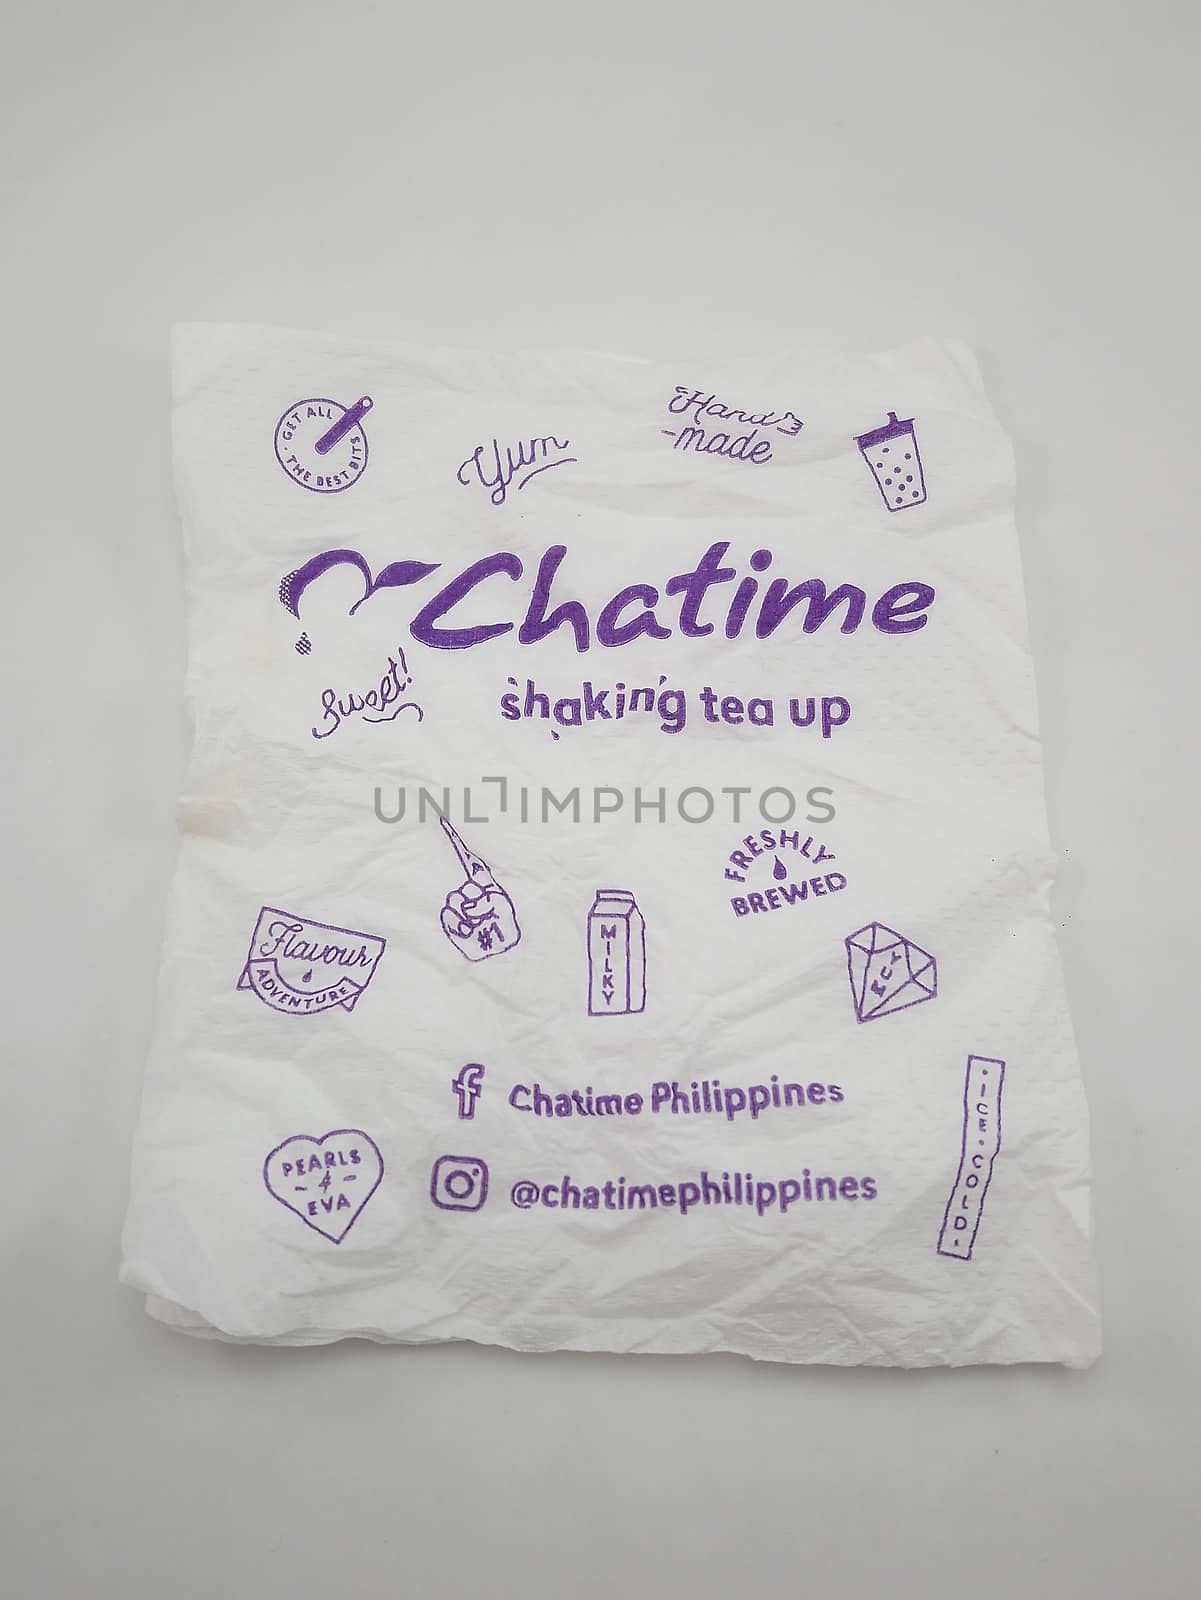 MANILA, PH - SEPT 24 - Chatime tissue paper napkin on September 24, 2020 in Manila, Philippines.